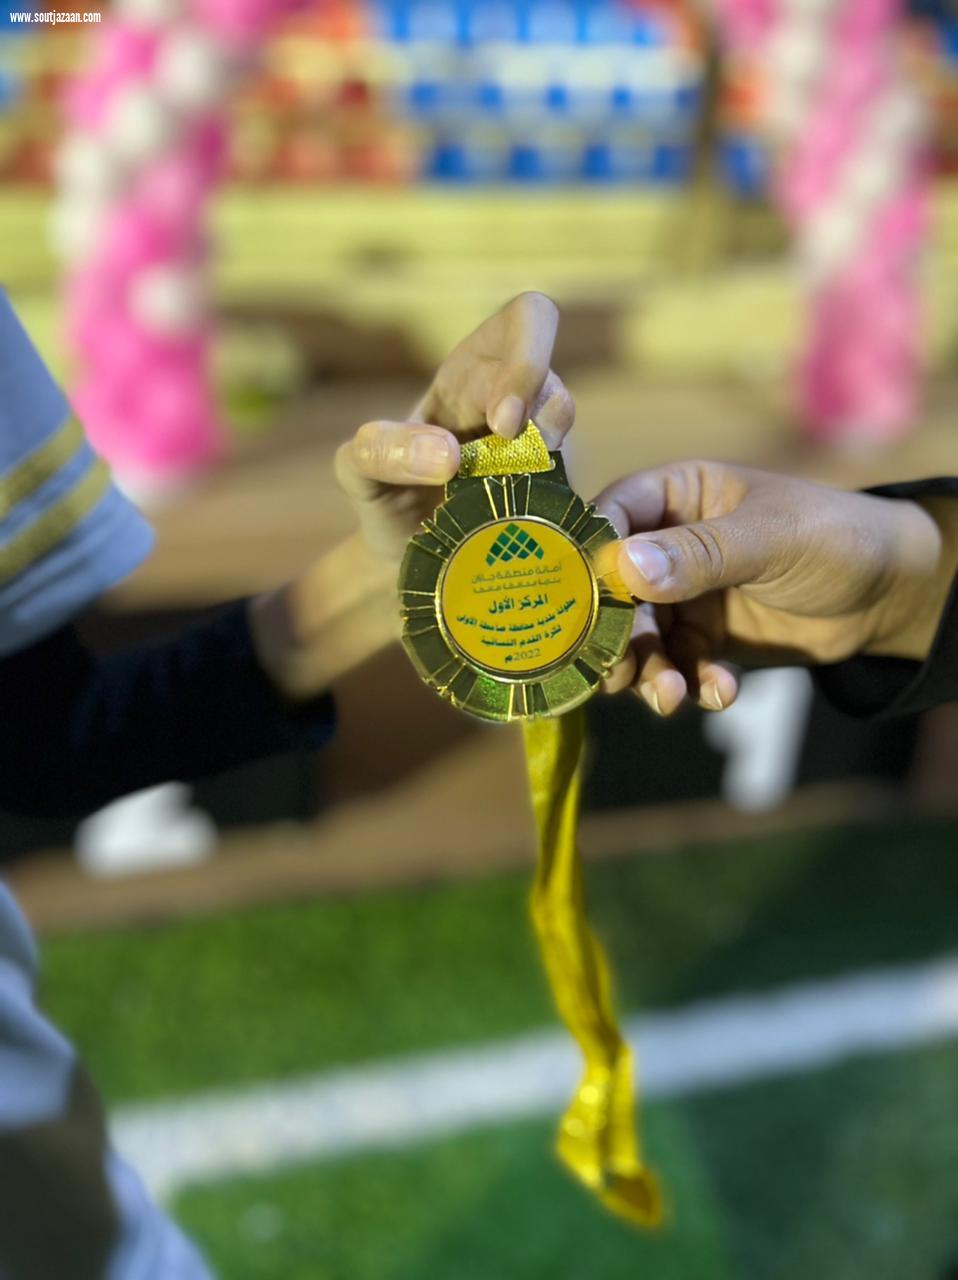 وسط حضور جماهيري نسائي كبير | بلدية صامطة تتوج فريق العطاء النسائي بطلاً لبطولة كرة القدم النسائية الأولى بالمنطقة